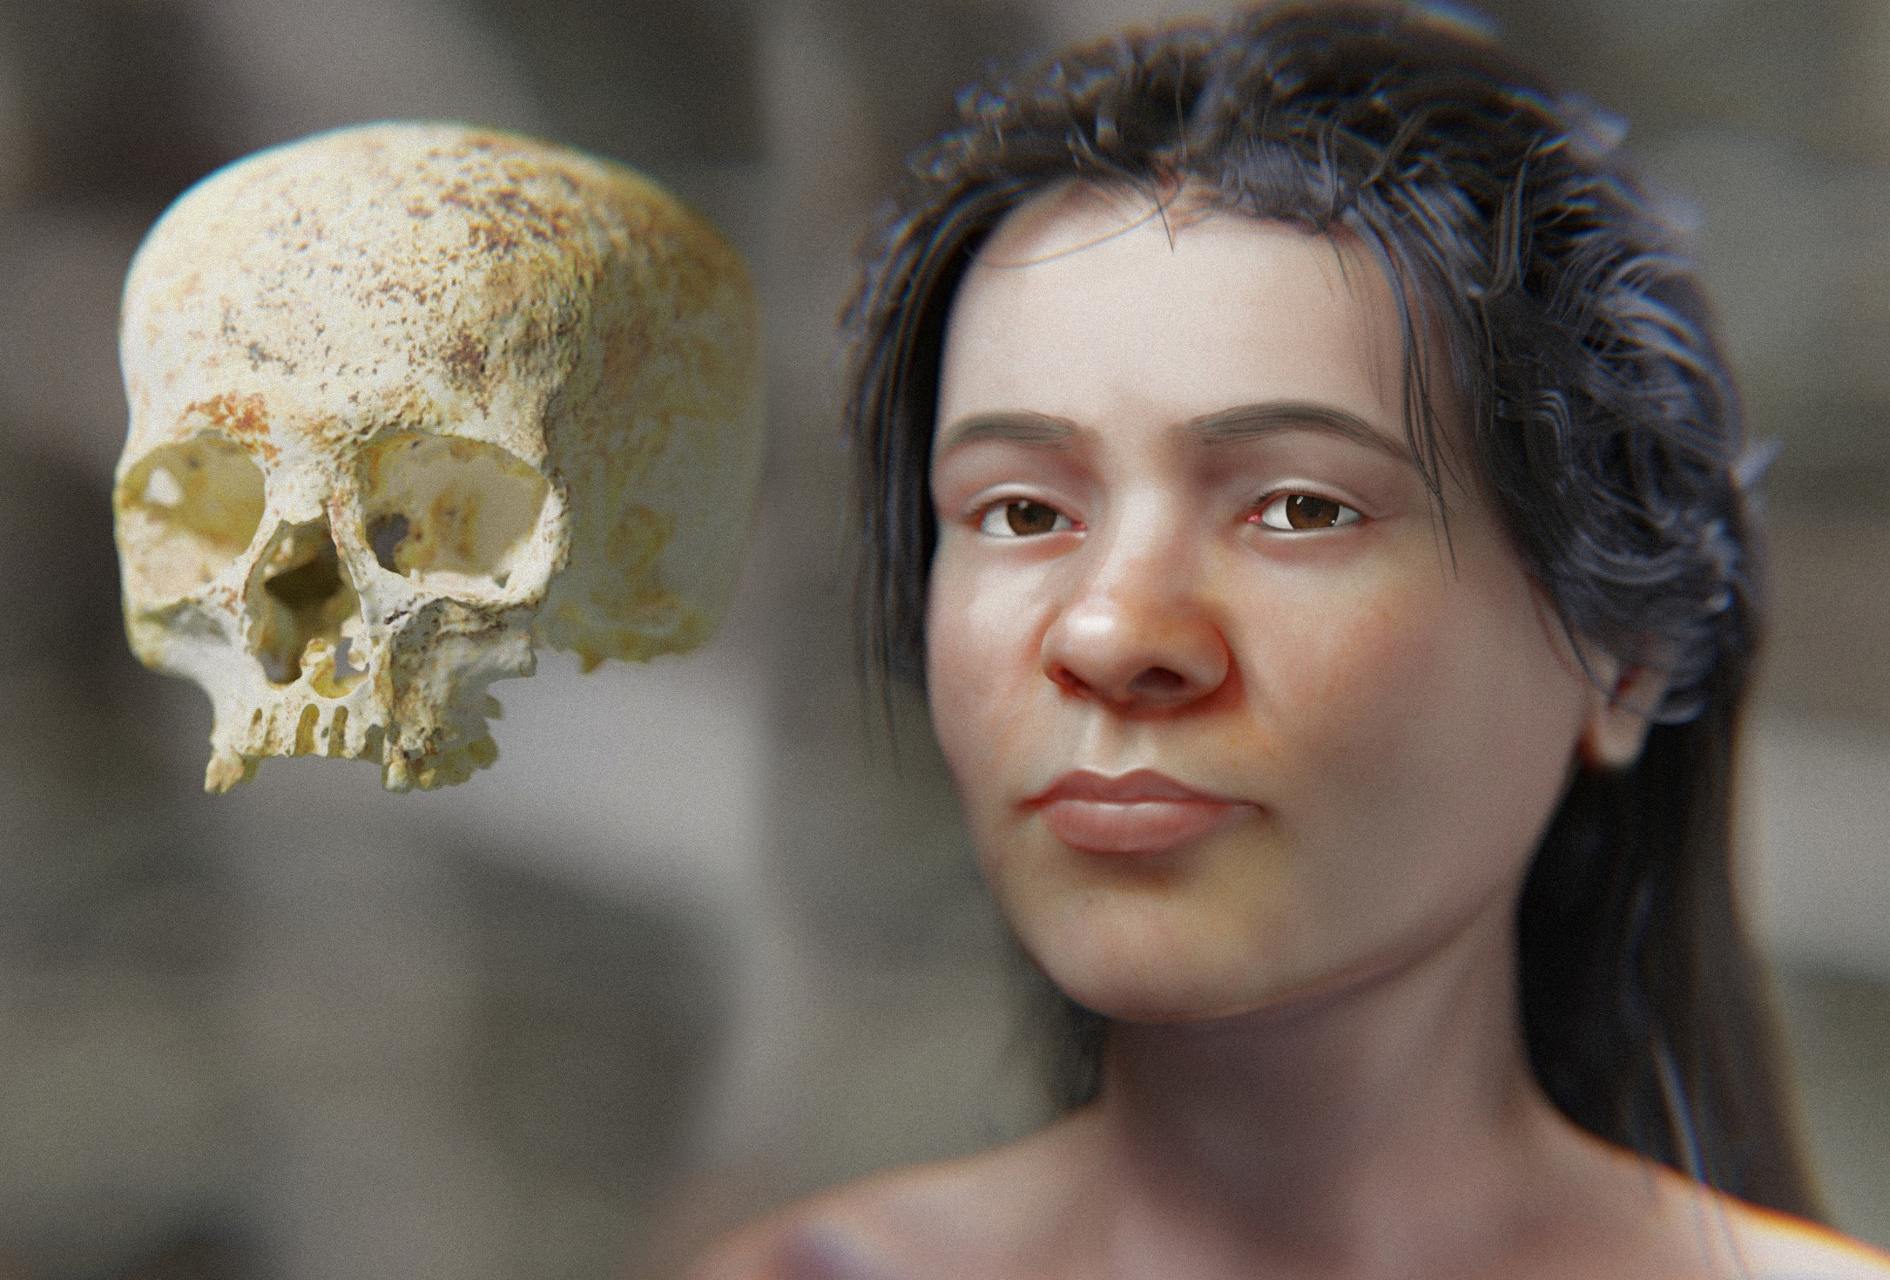 Los científicos crearon una representación facial de una mujer de la Edad del Bronce utilizando escaneos de su cráneo. Se cree que esta imagen es una réplica cercana de cómo pudo haber sido hace 3,800 años. Una aproximación facial de una mujer de la Edad de Bronce.